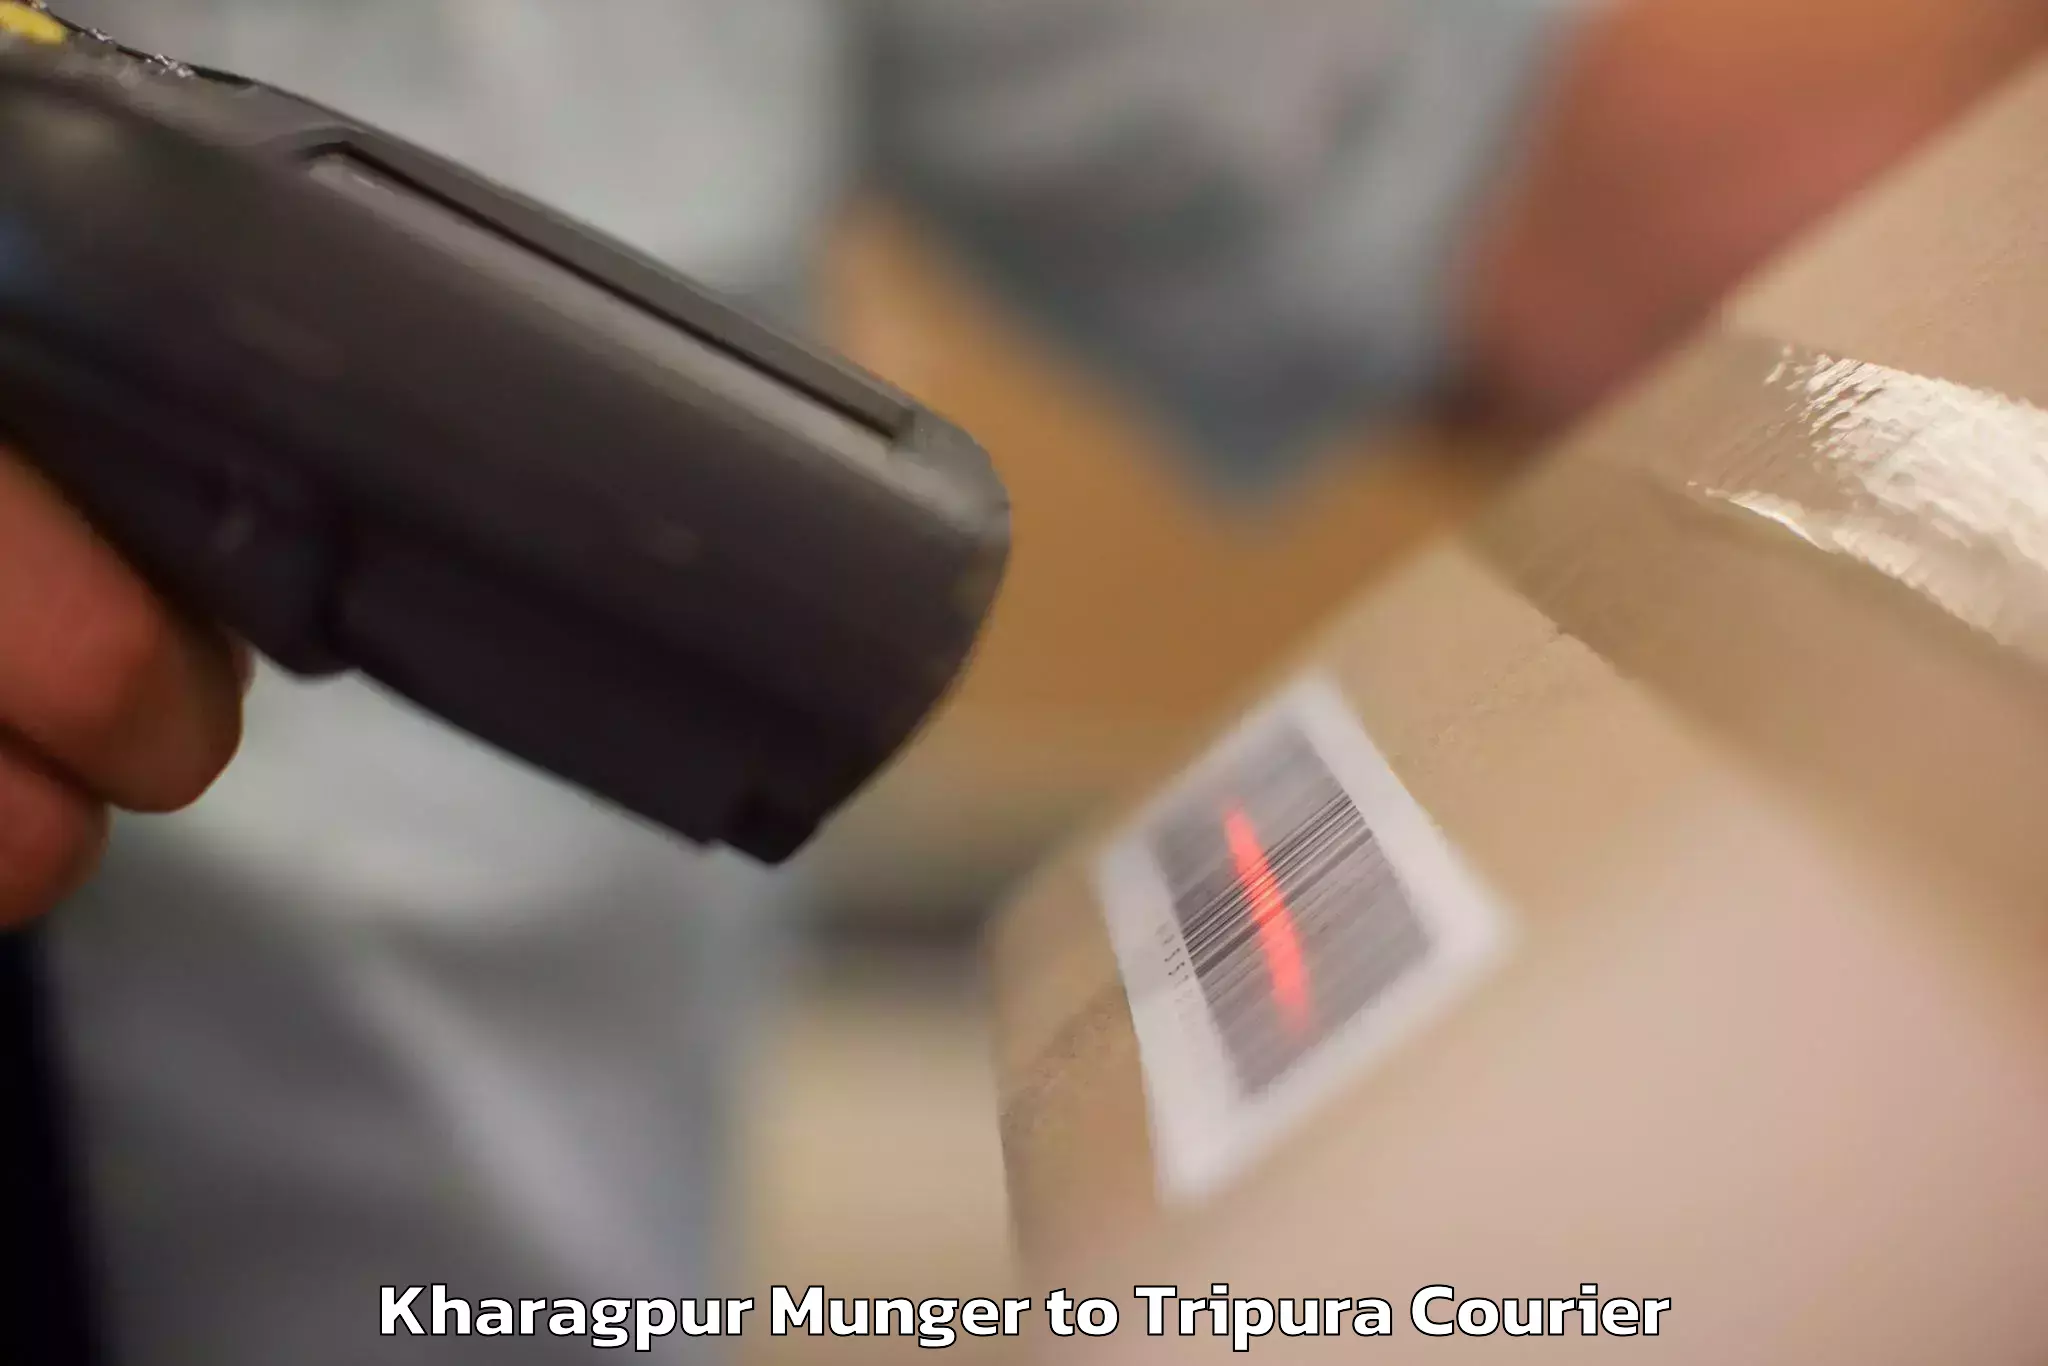 Luggage transfer service Kharagpur Munger to Aambasa